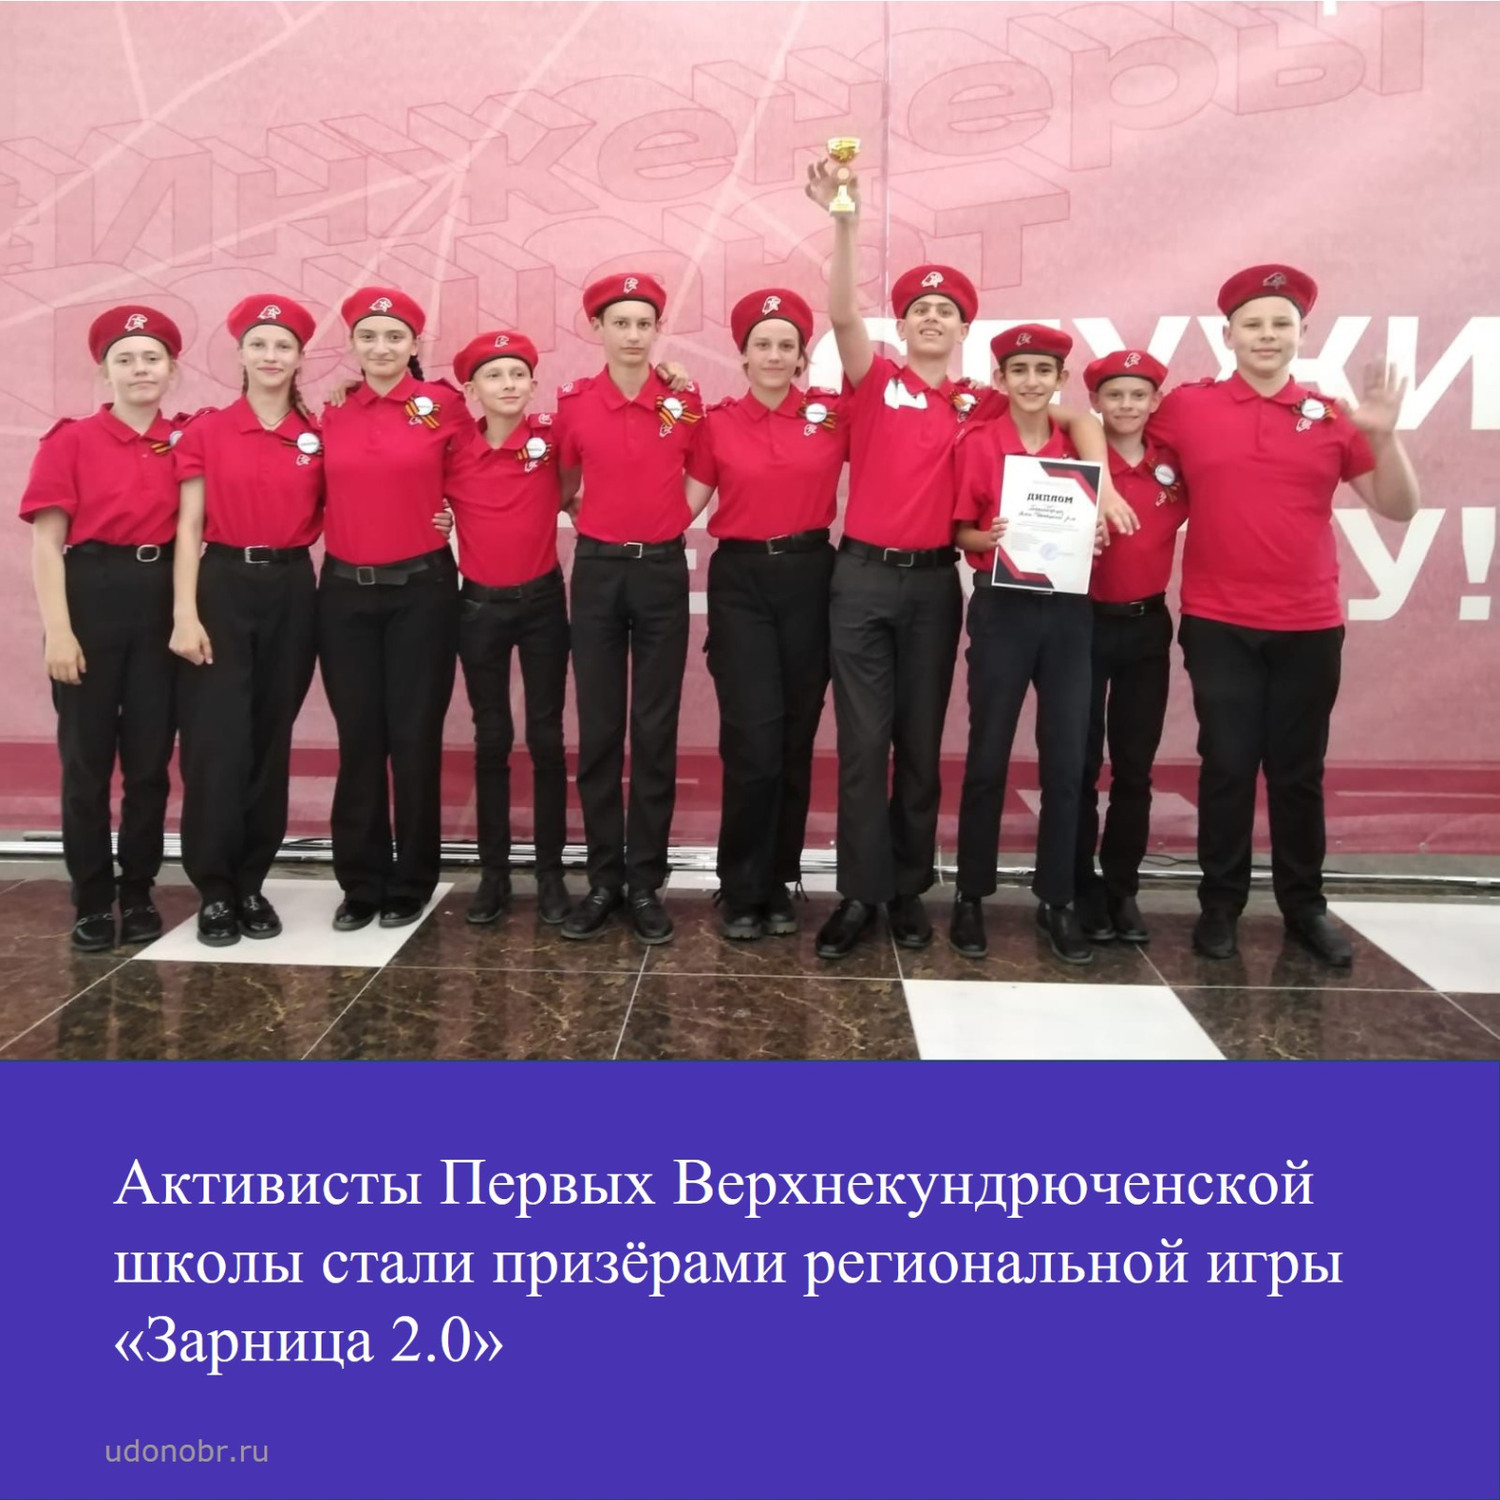 Активисты Первых Верхнекундрюченской школы стали призёрами региональной игры «Зарница 2.0»